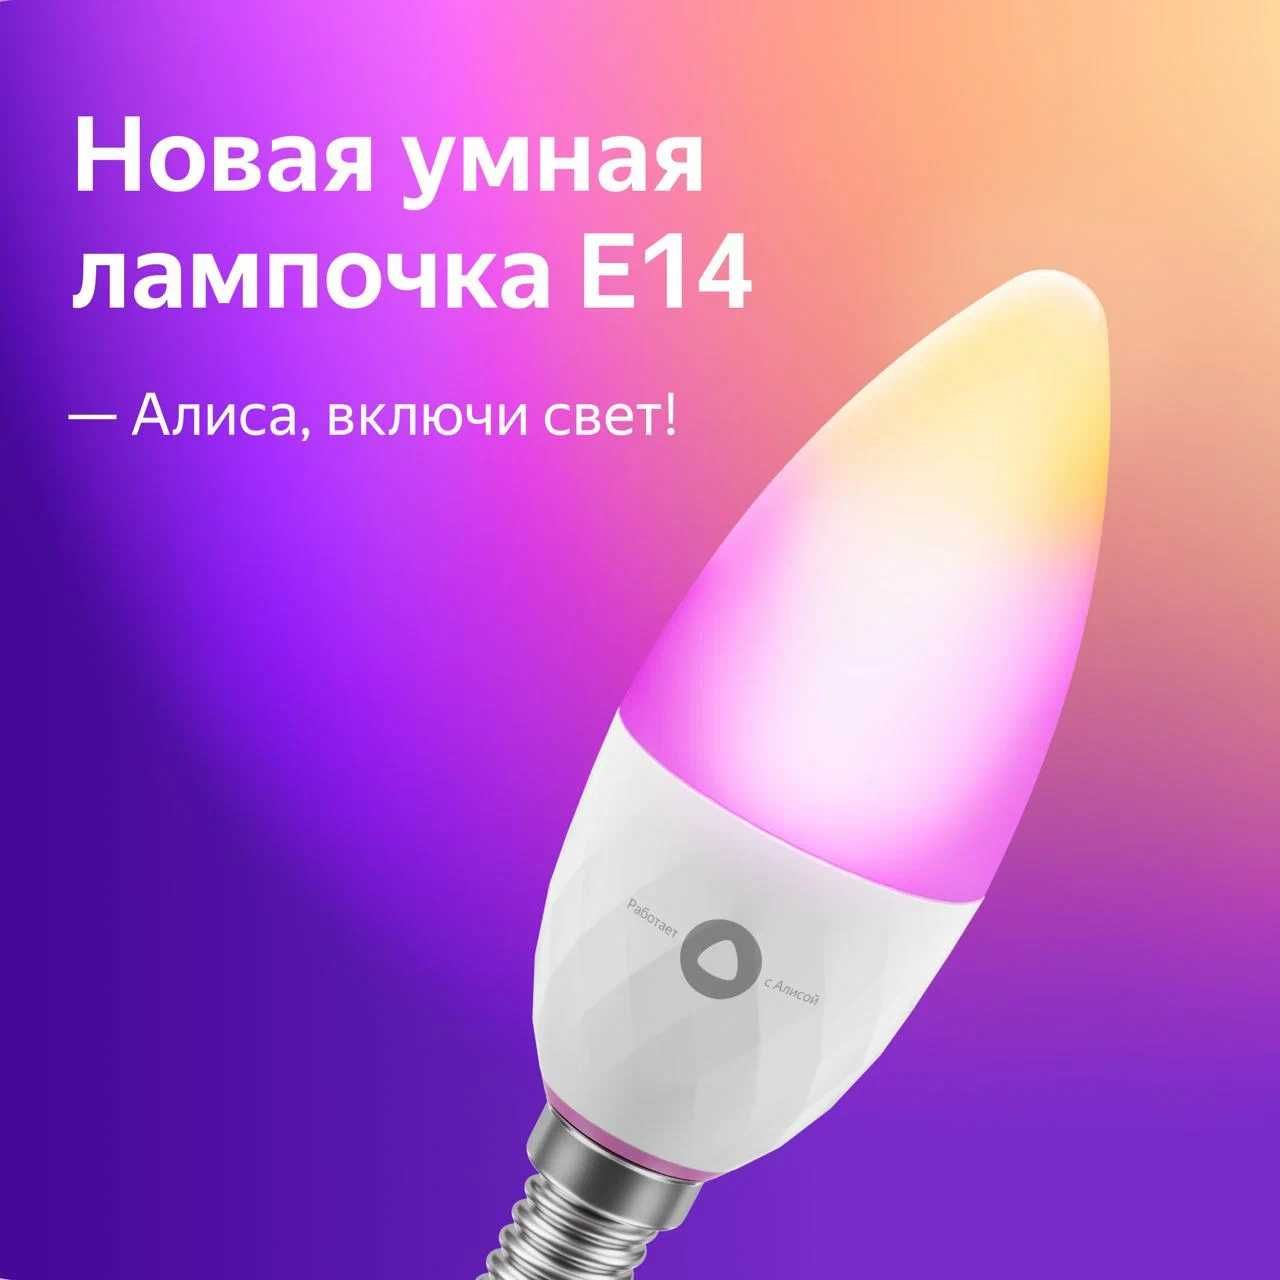 Умная лампочка Яндекс Е14 YNDX-00017